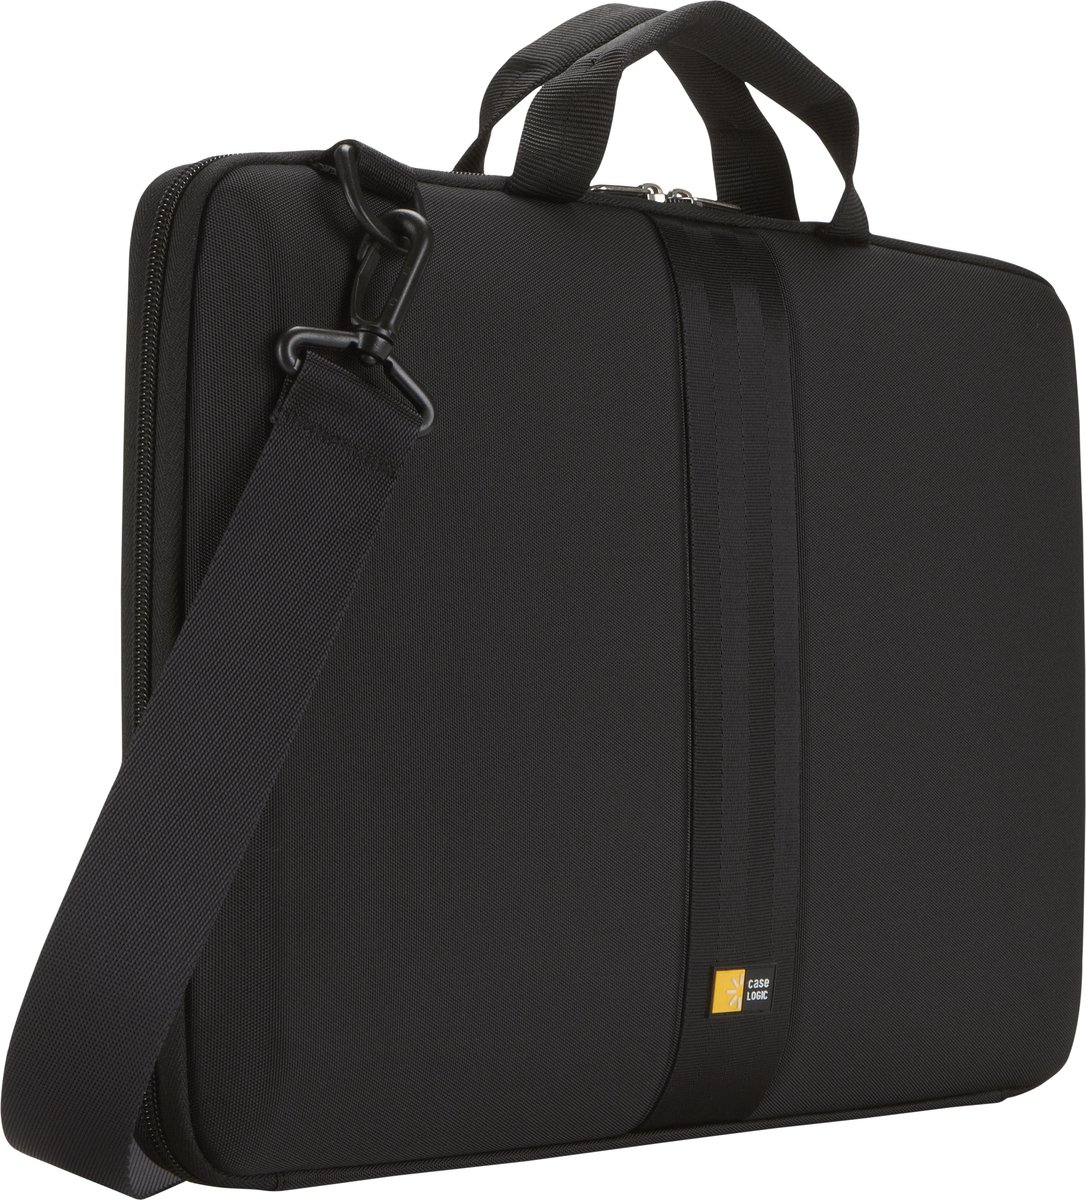 Case Logic QNS116 - Laptoptas / Sleeve 16 inch - Zwart - Case Logic